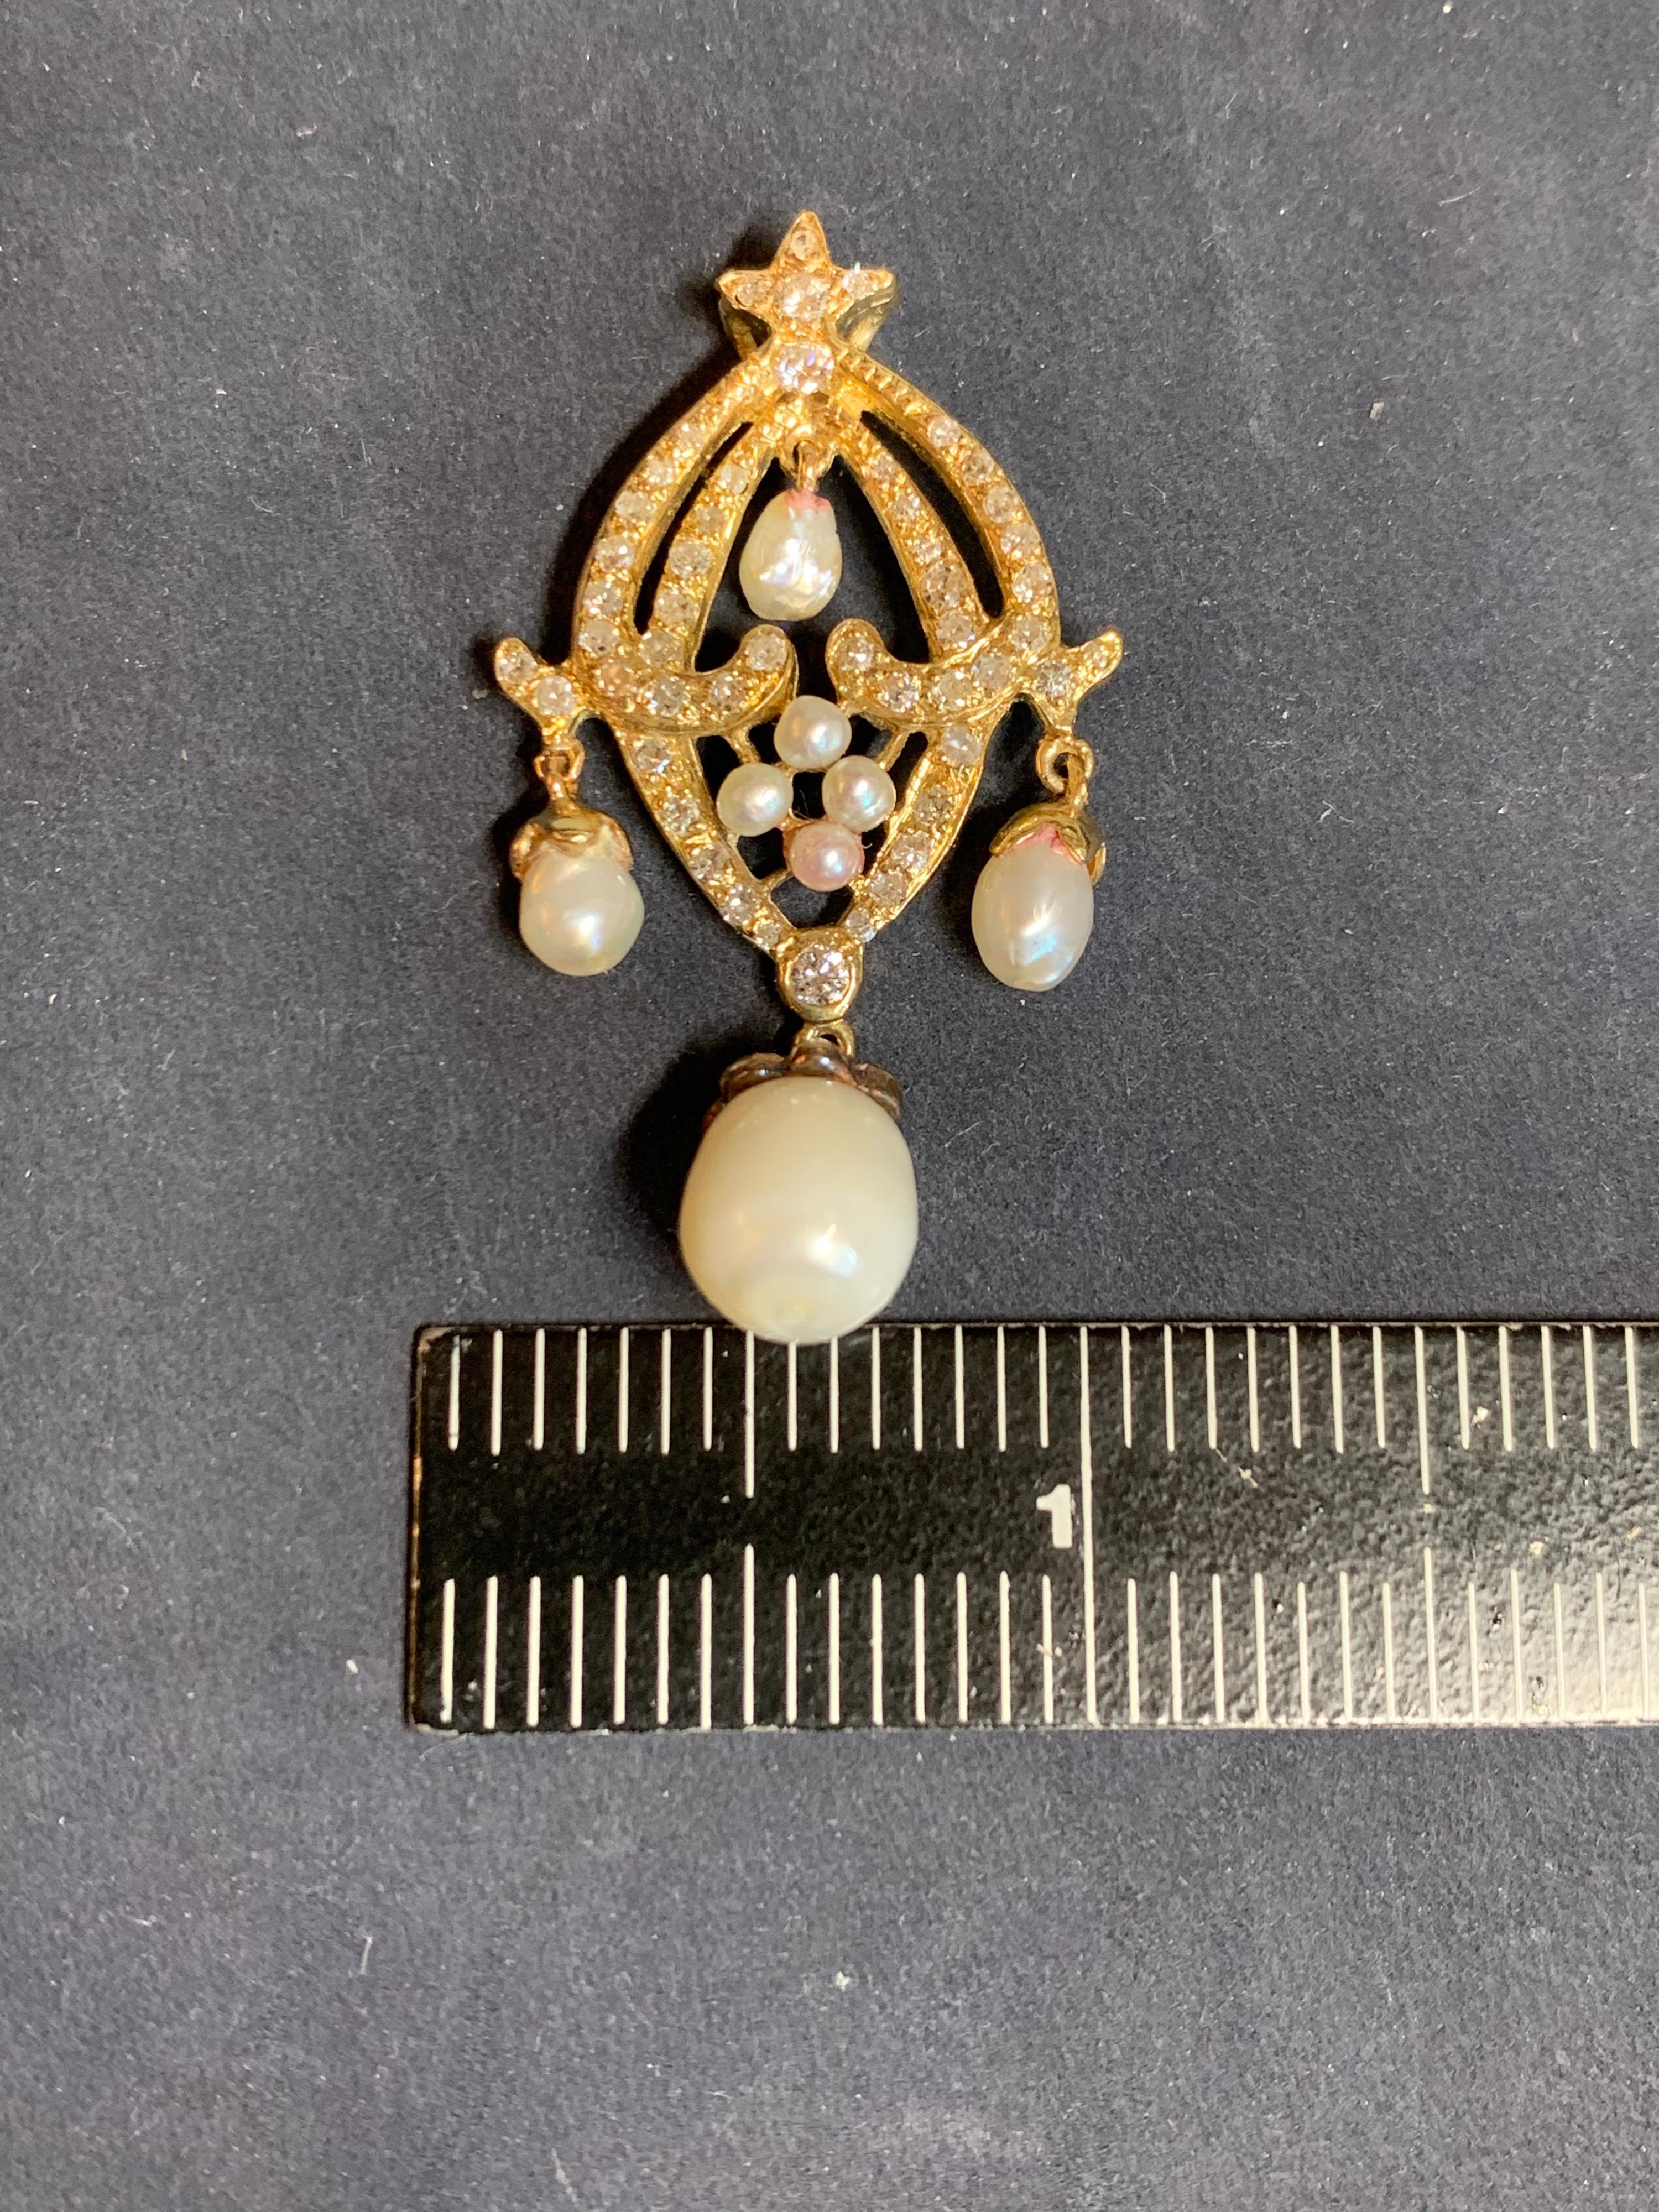 Retro Gold Pendant 0.70 Carat Natural Round Diamond Abd Pearl, circa 1950 For Sale 6